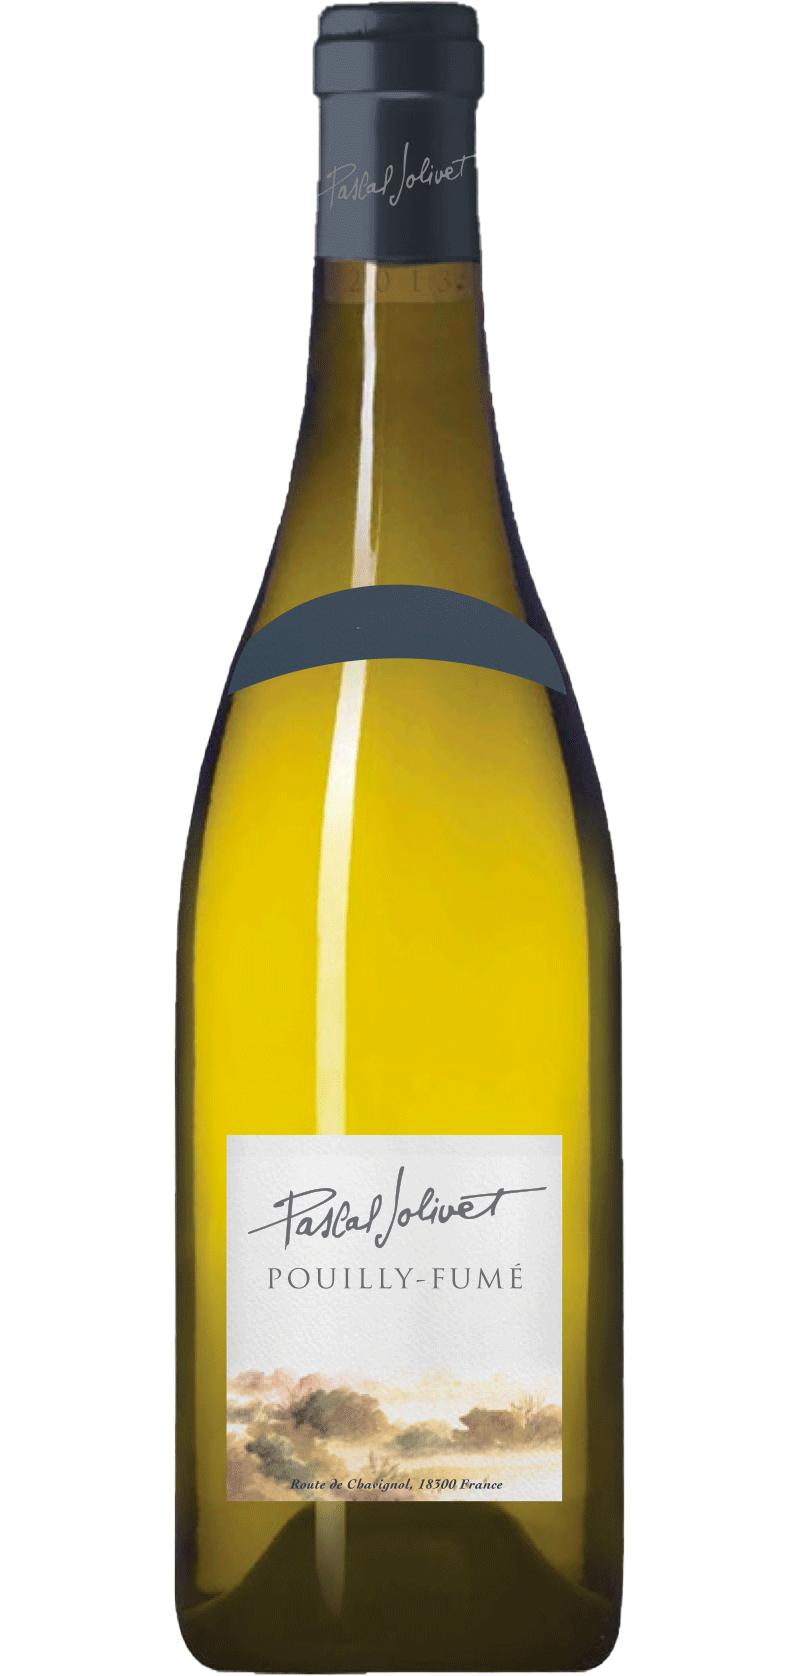 Pouilly-Fumé – Pascal Jolivet 2019 – Vin blanc